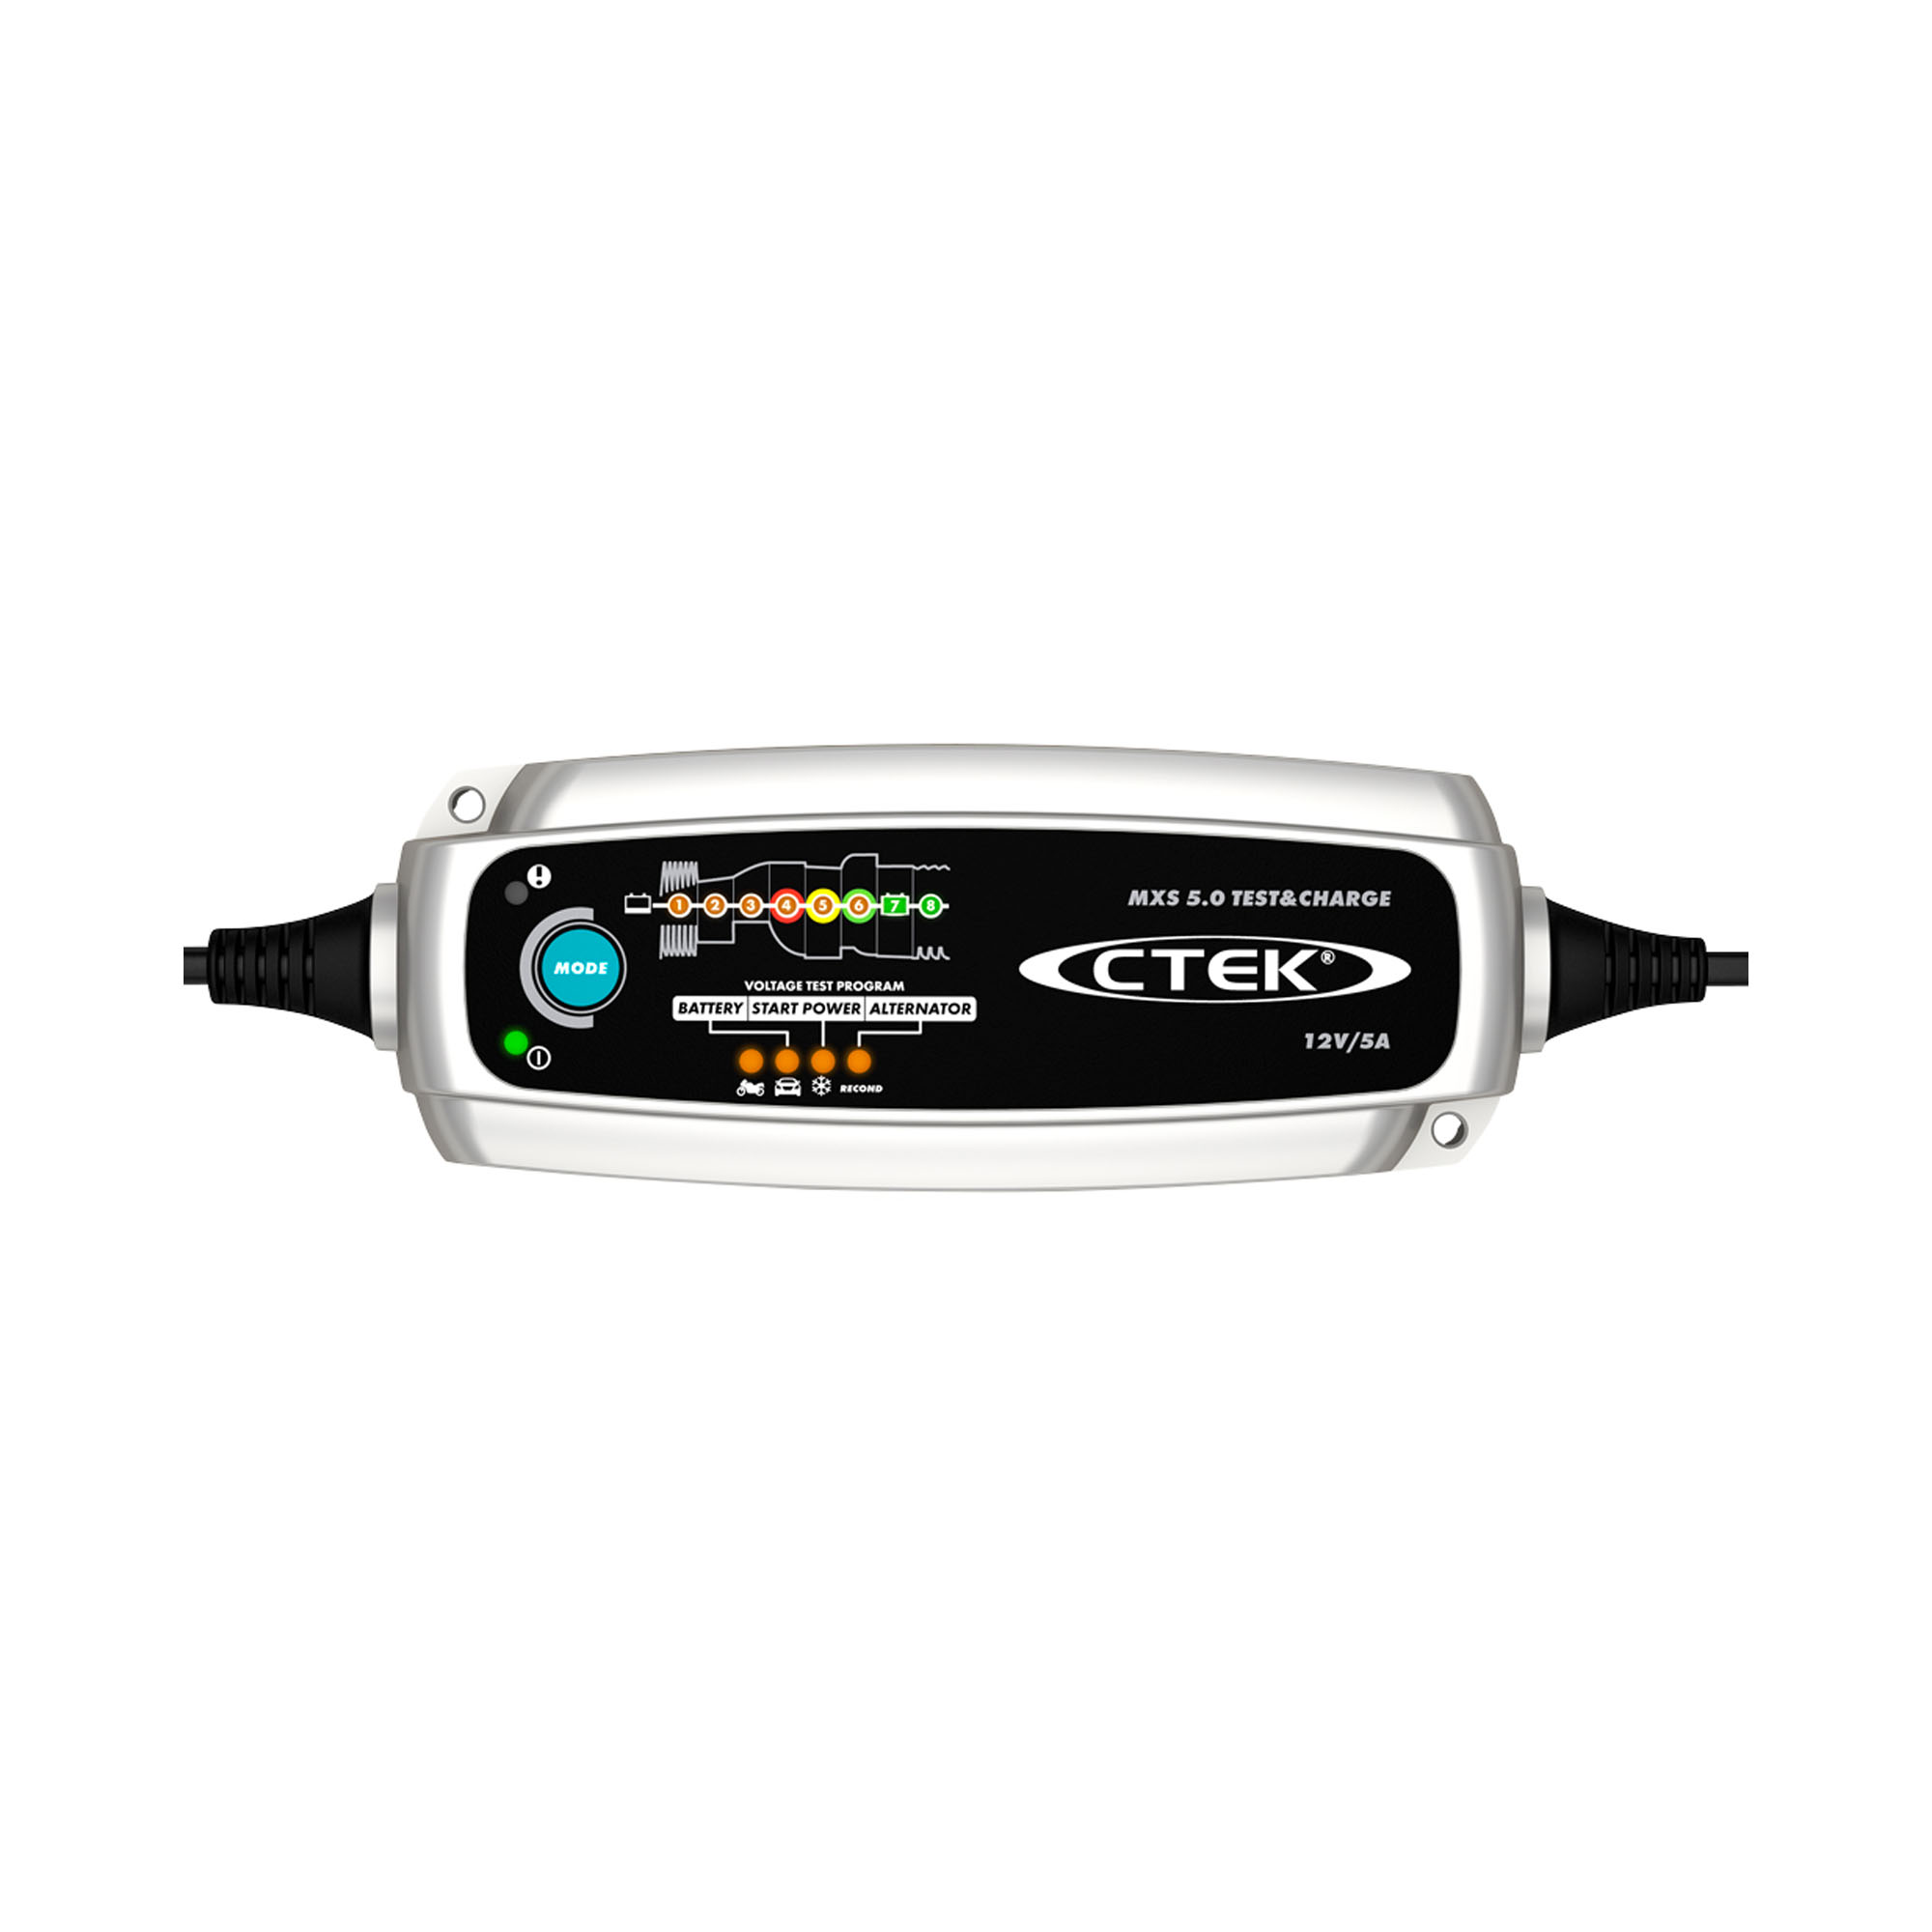 CTEK Carregador MXS 5.0 Test and Charge